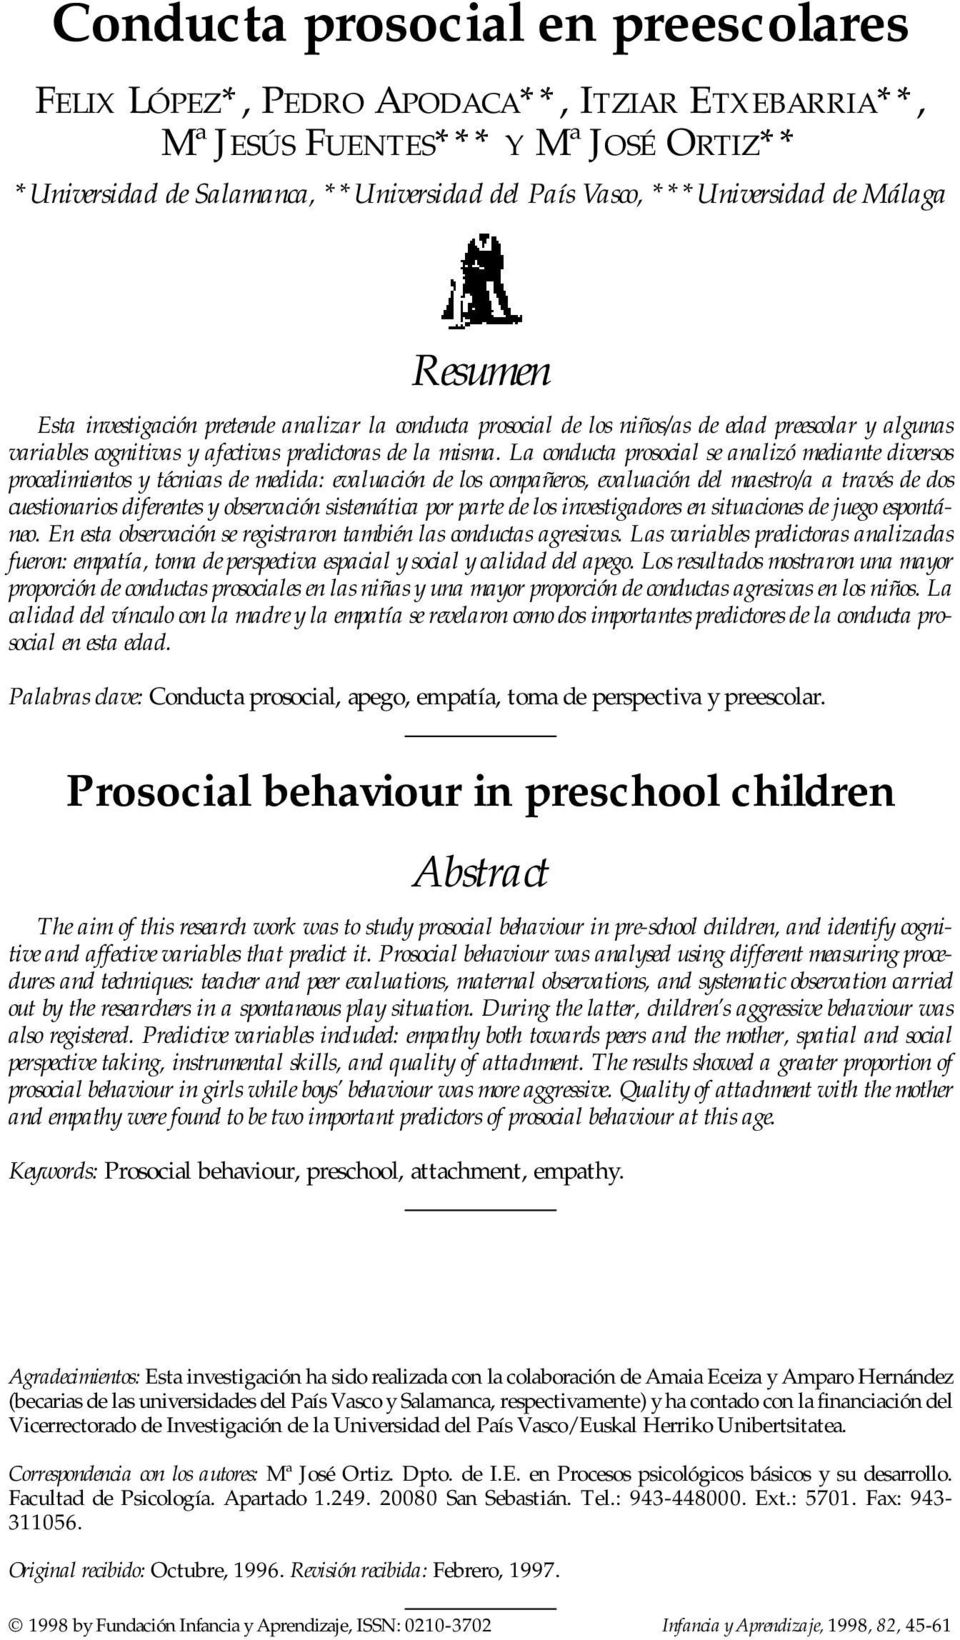 La conducta prosocial se analizó mediante diversos procedimientos y técnicas de medida: evaluación de los compañeros, evaluación del maestro/a a través de dos cuestionarios diferentes y observación